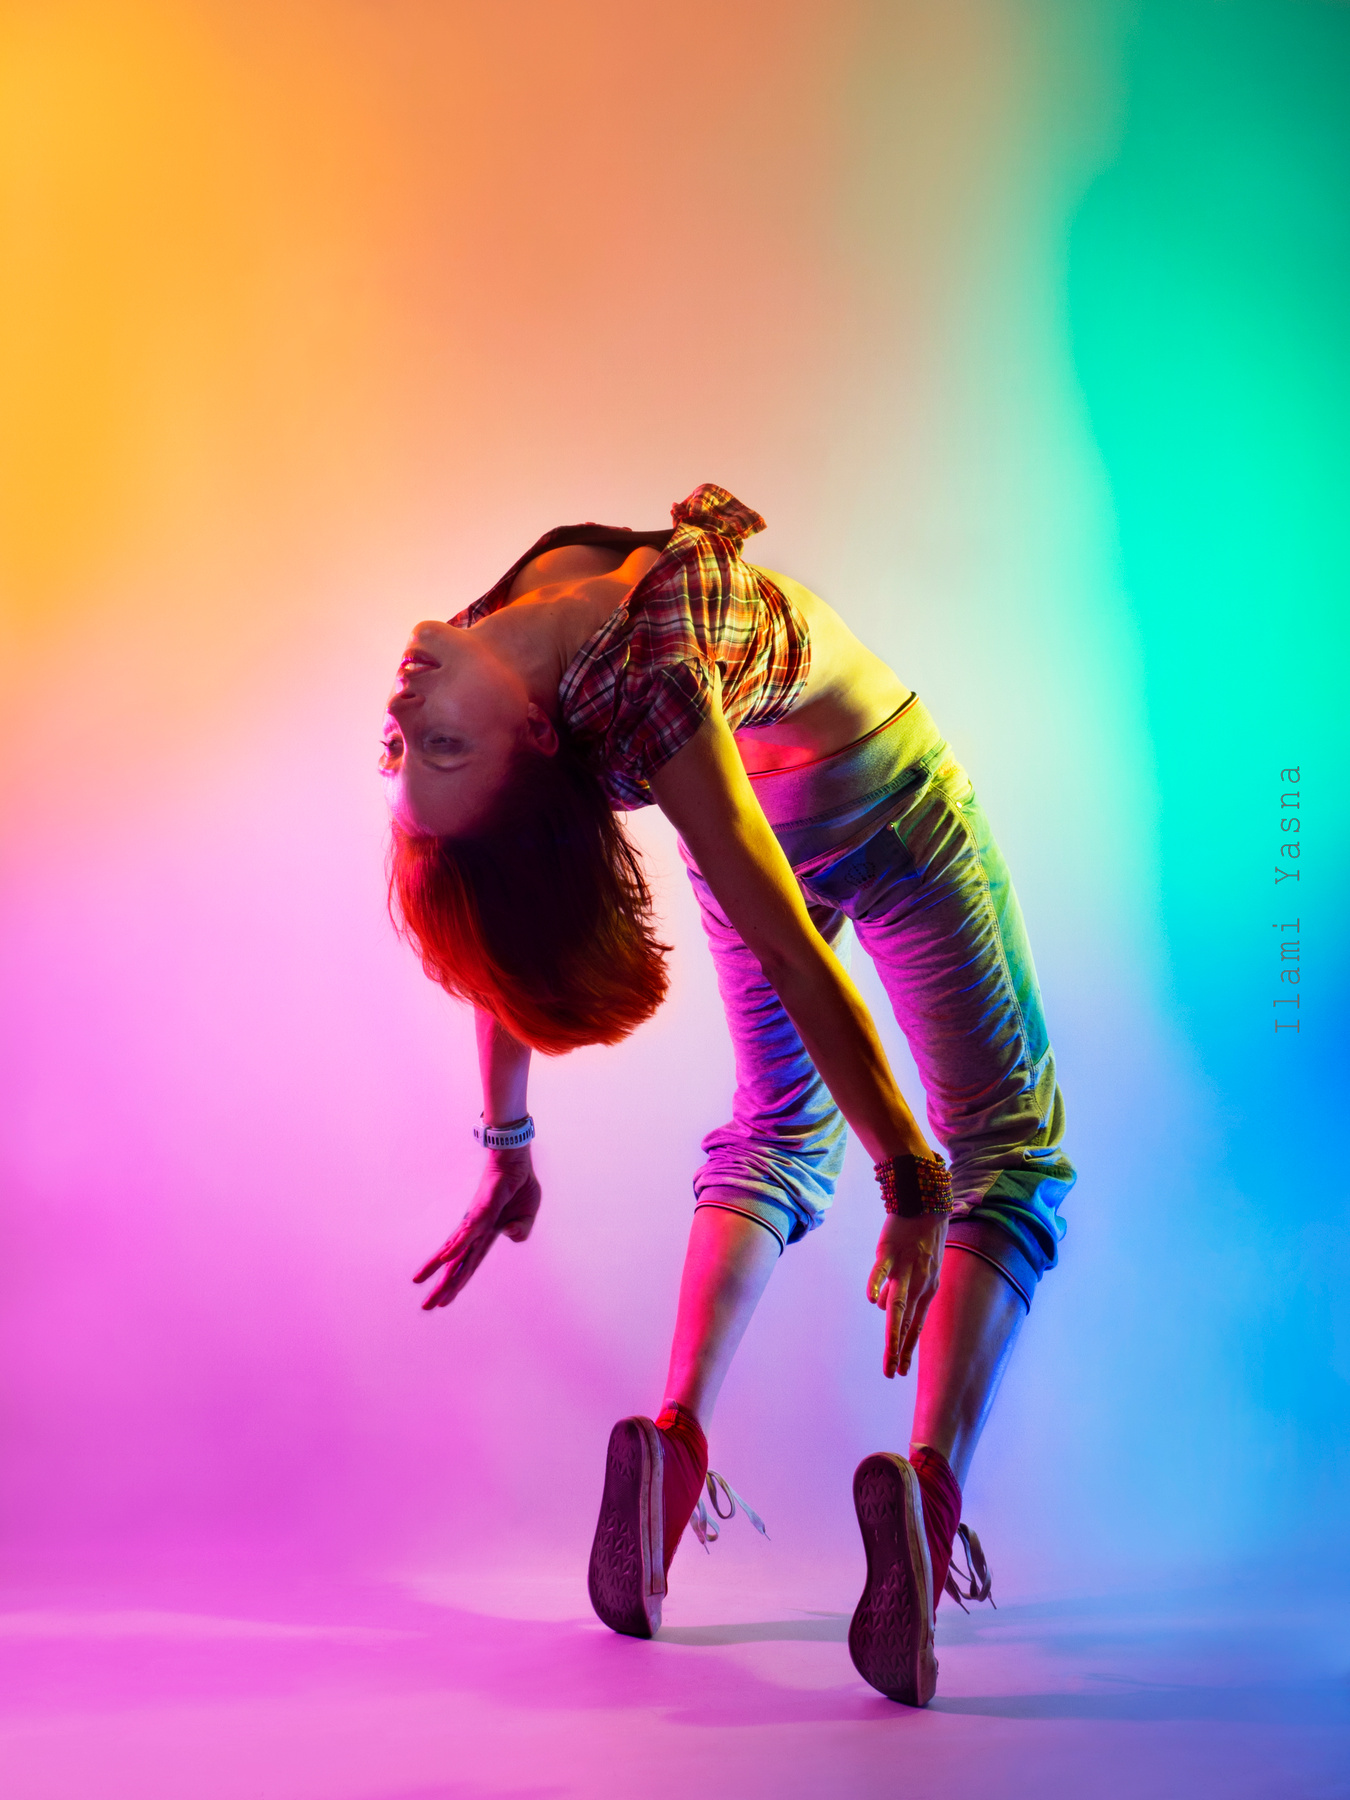 Let’s be crazy! радуга спектр танец движение спорт девушка студия цвет краски гимнастика